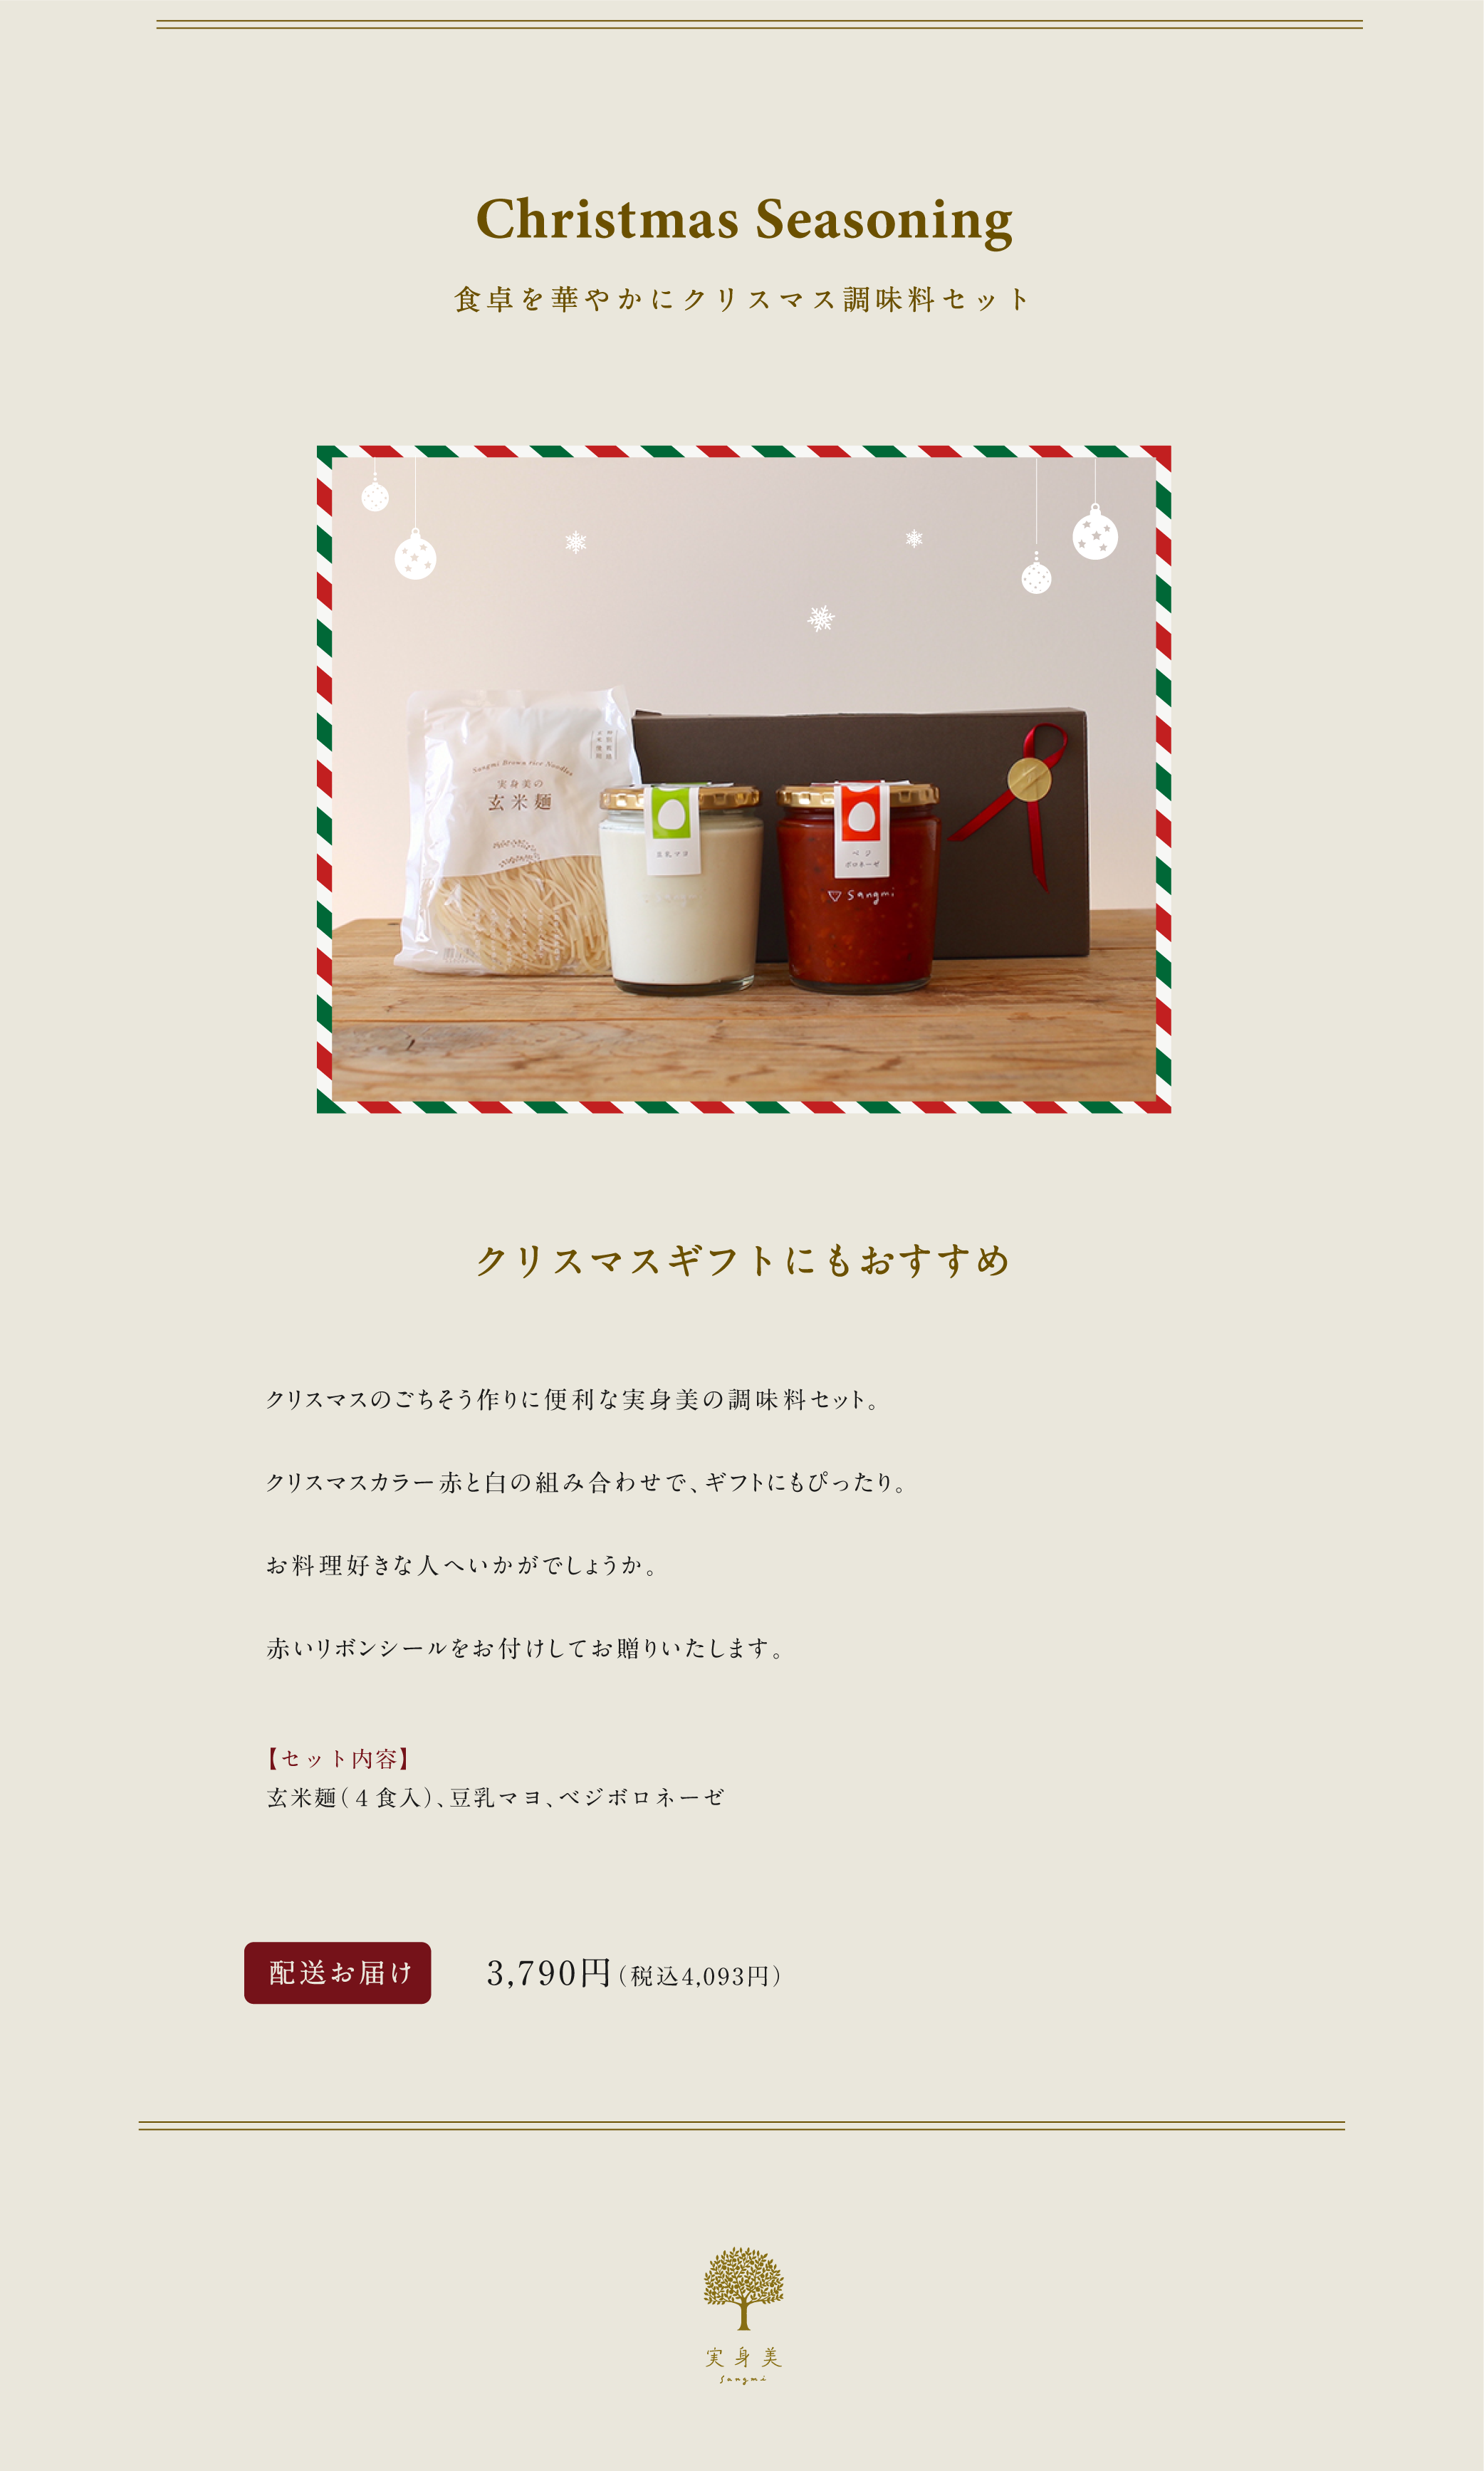 “クリスマス調味料セット”